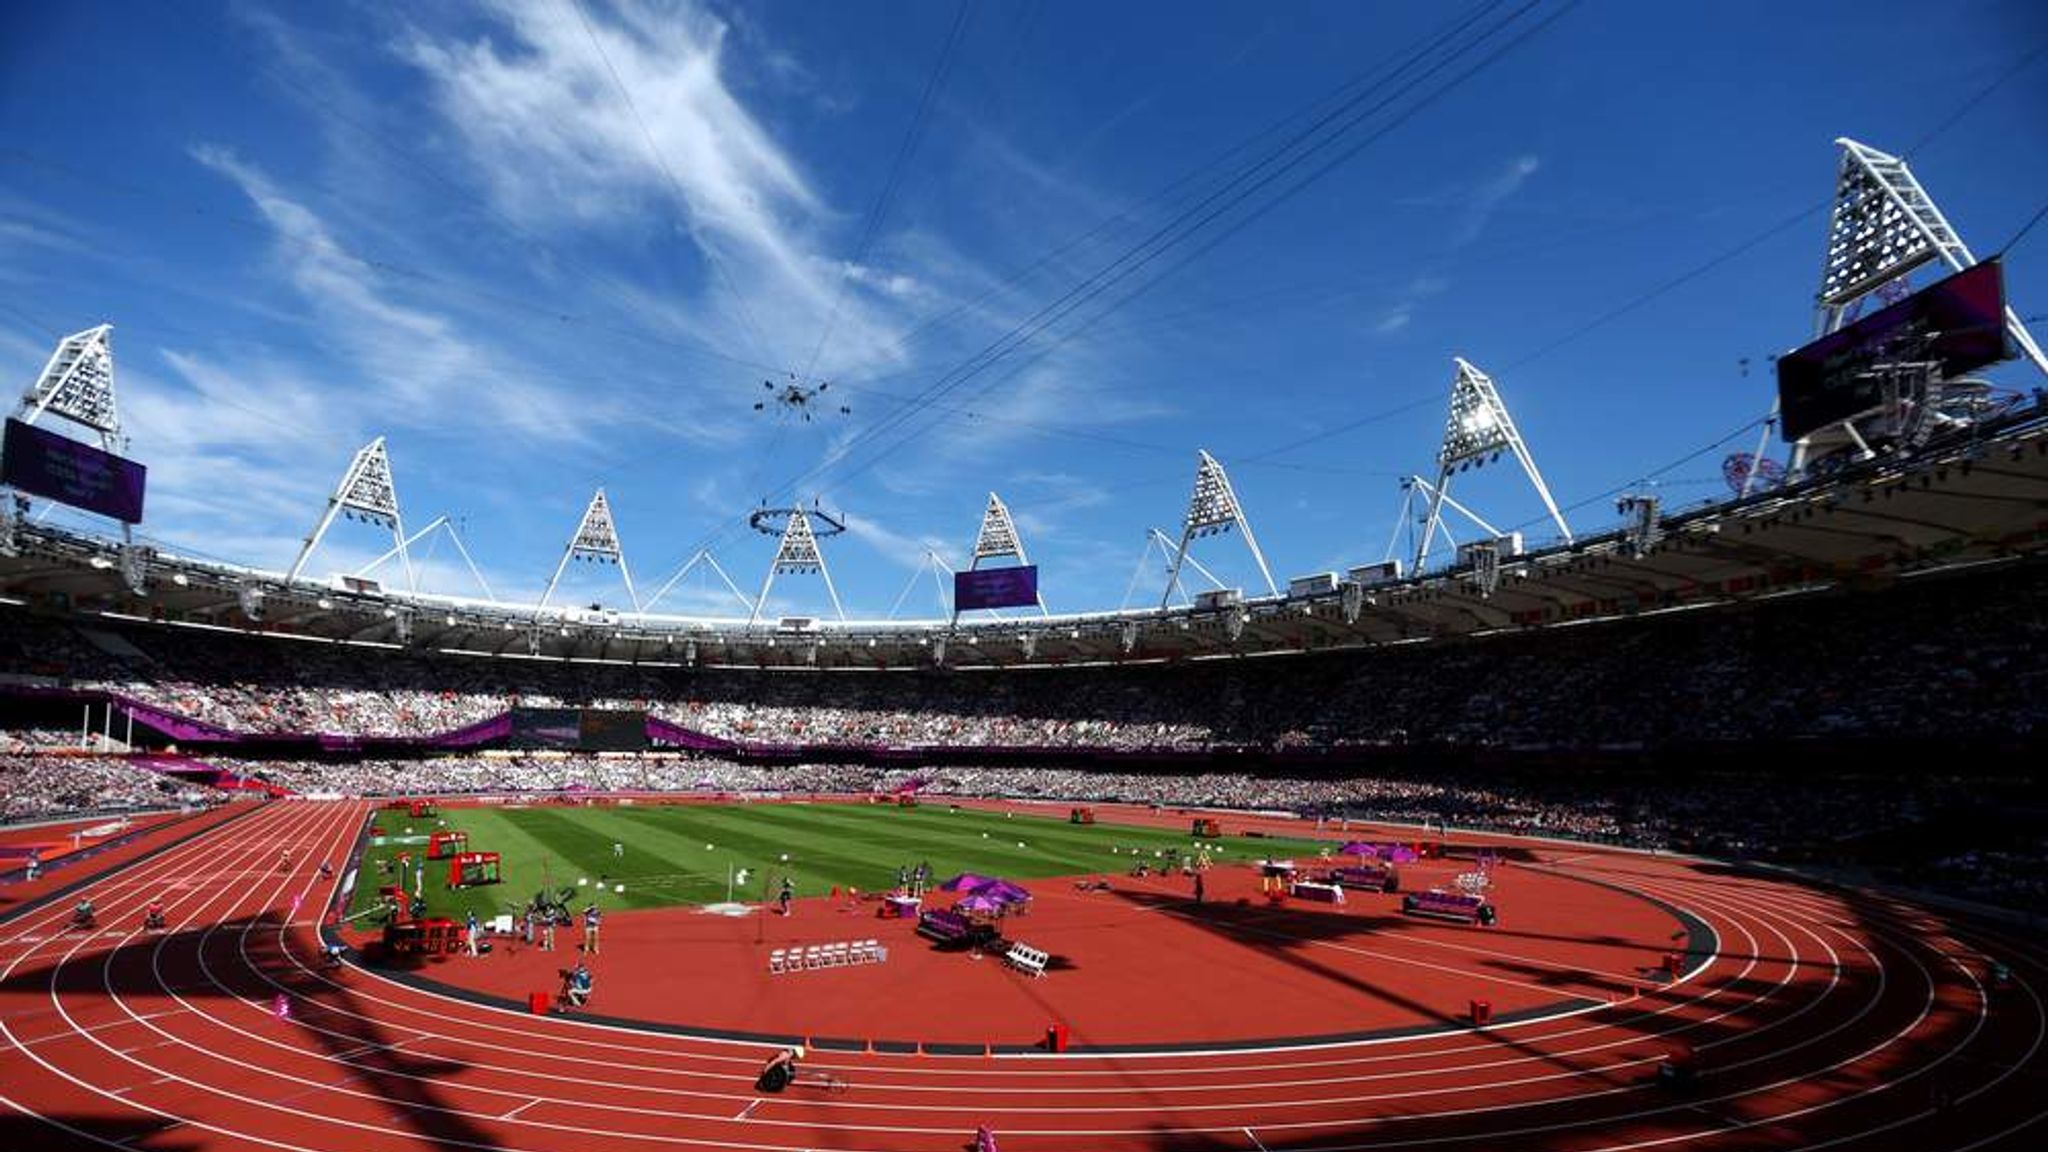 Олимпийский легкоатлетический стадион. Стадион Токио легкая атлетика. Стадион Олимпик. Олимпийский стадион (Лондон).